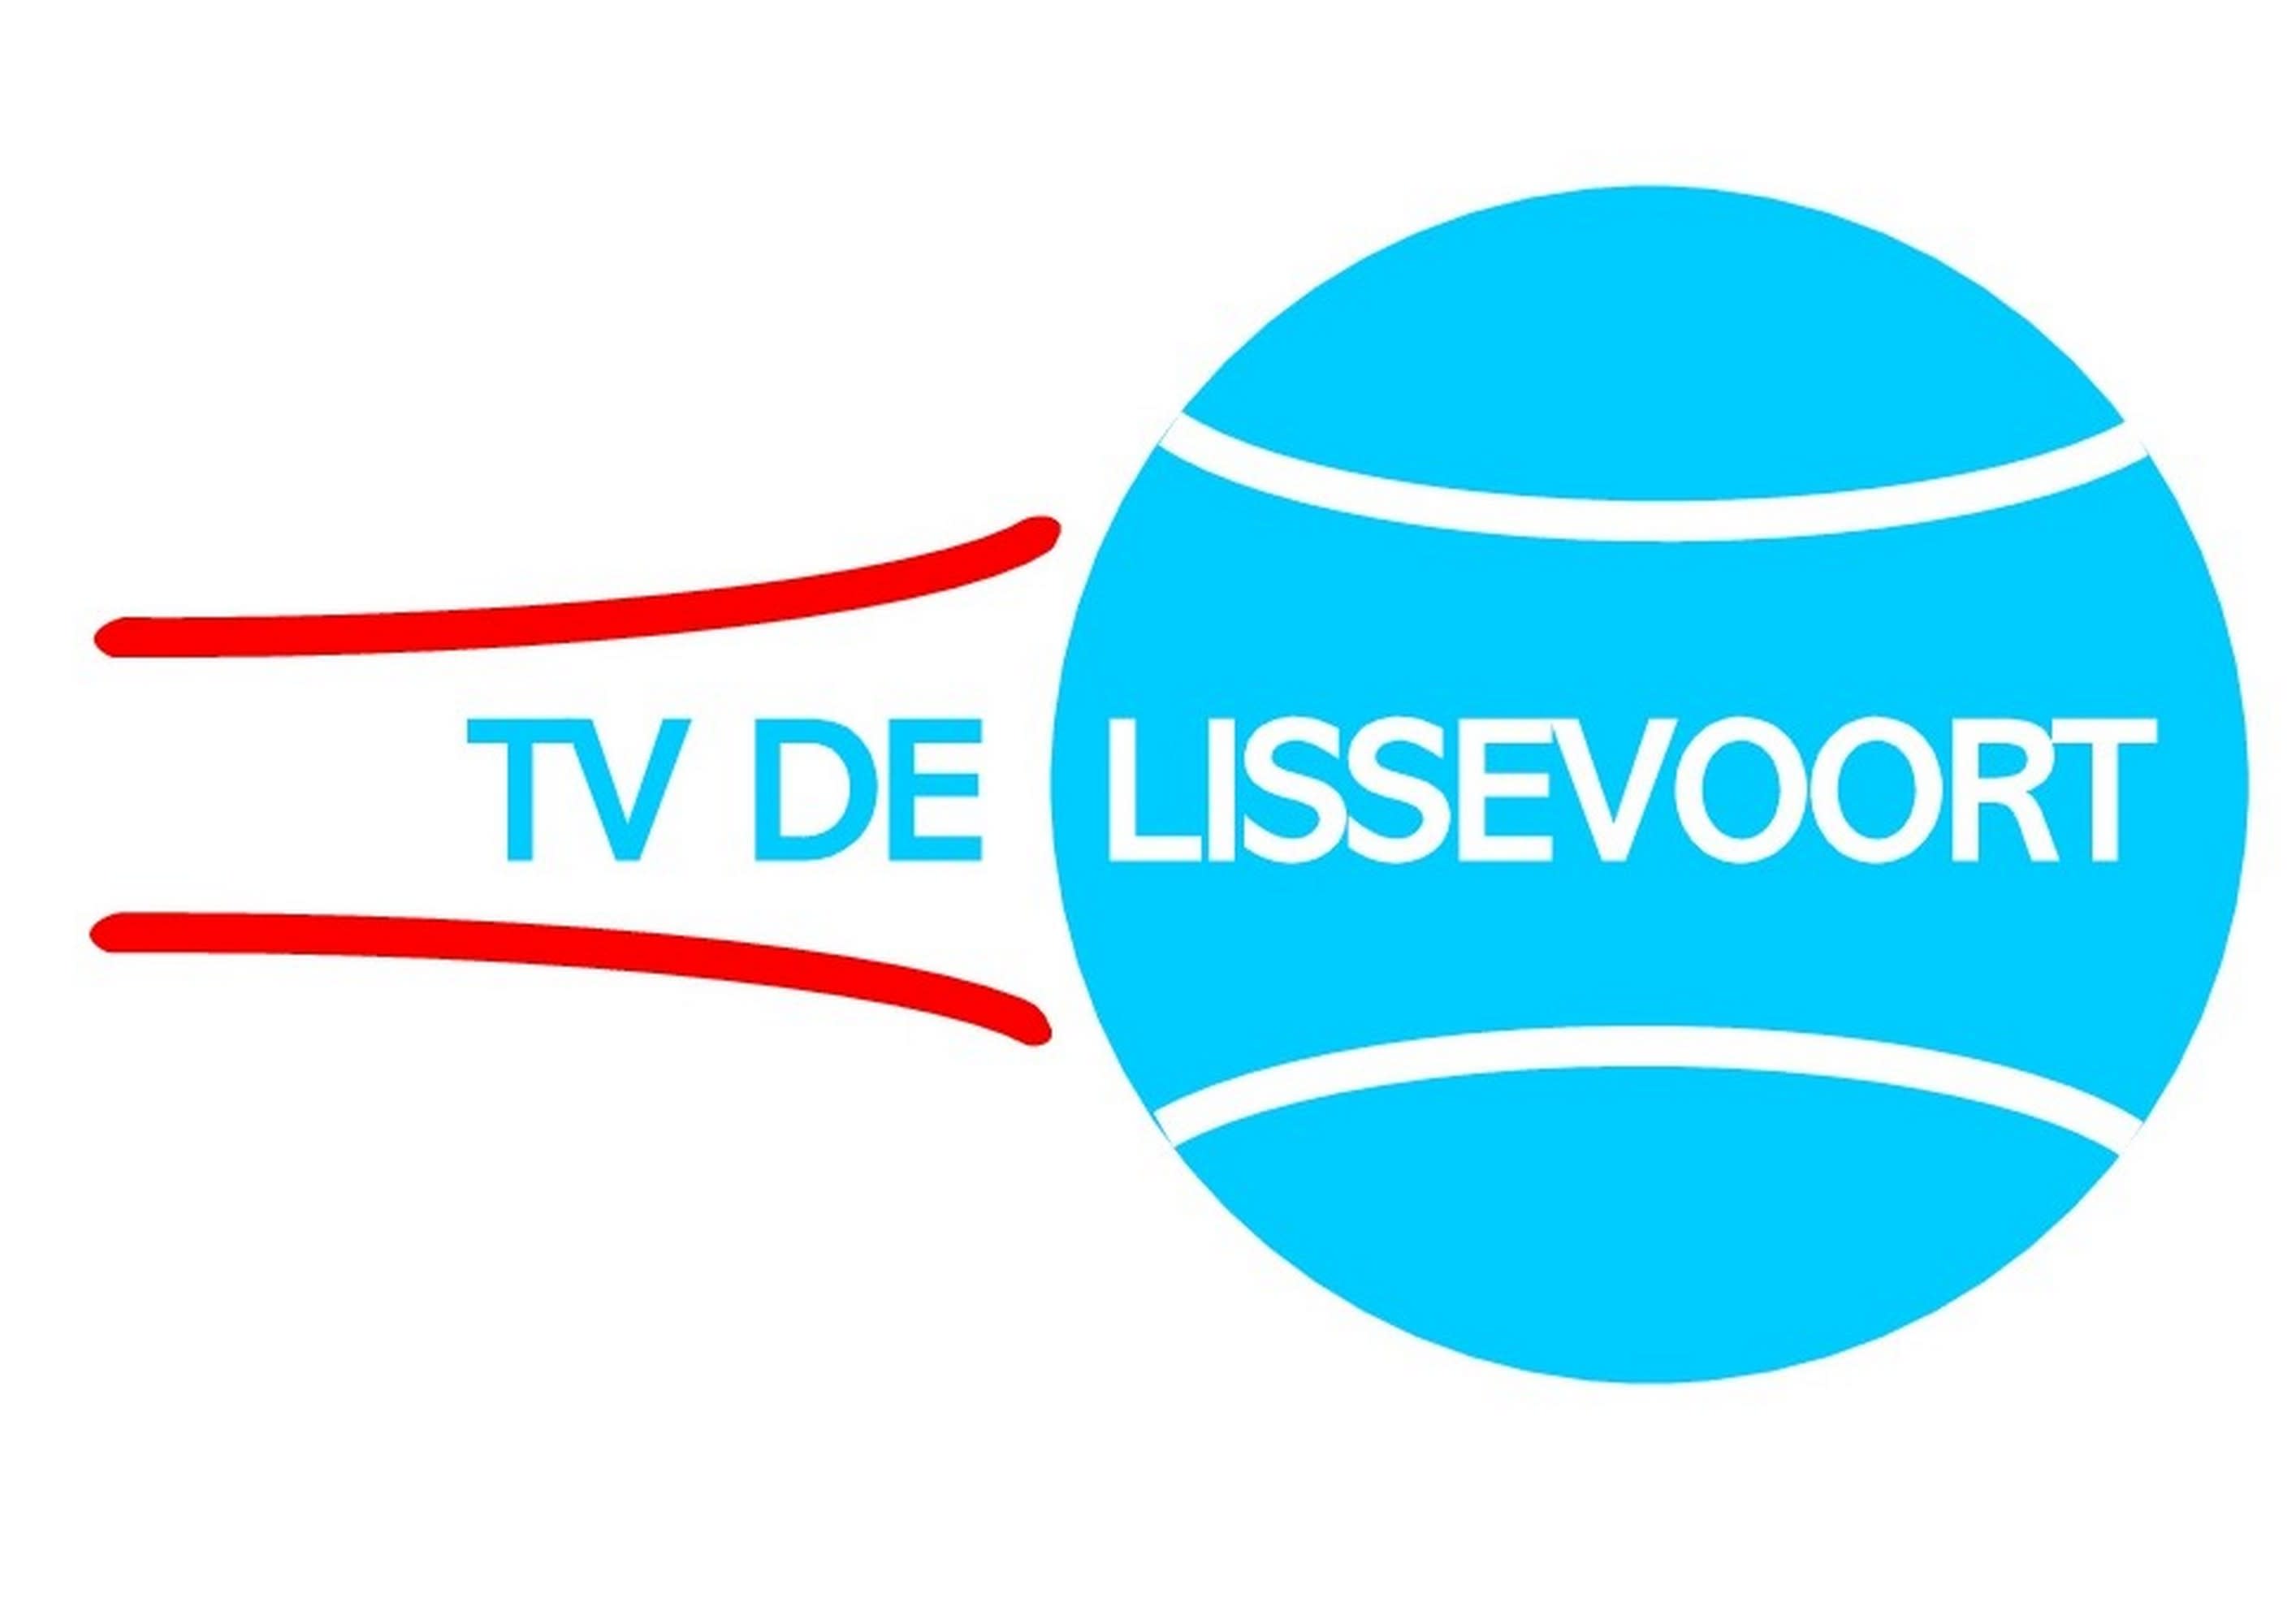 Profile image of venue TV De Lissevoort